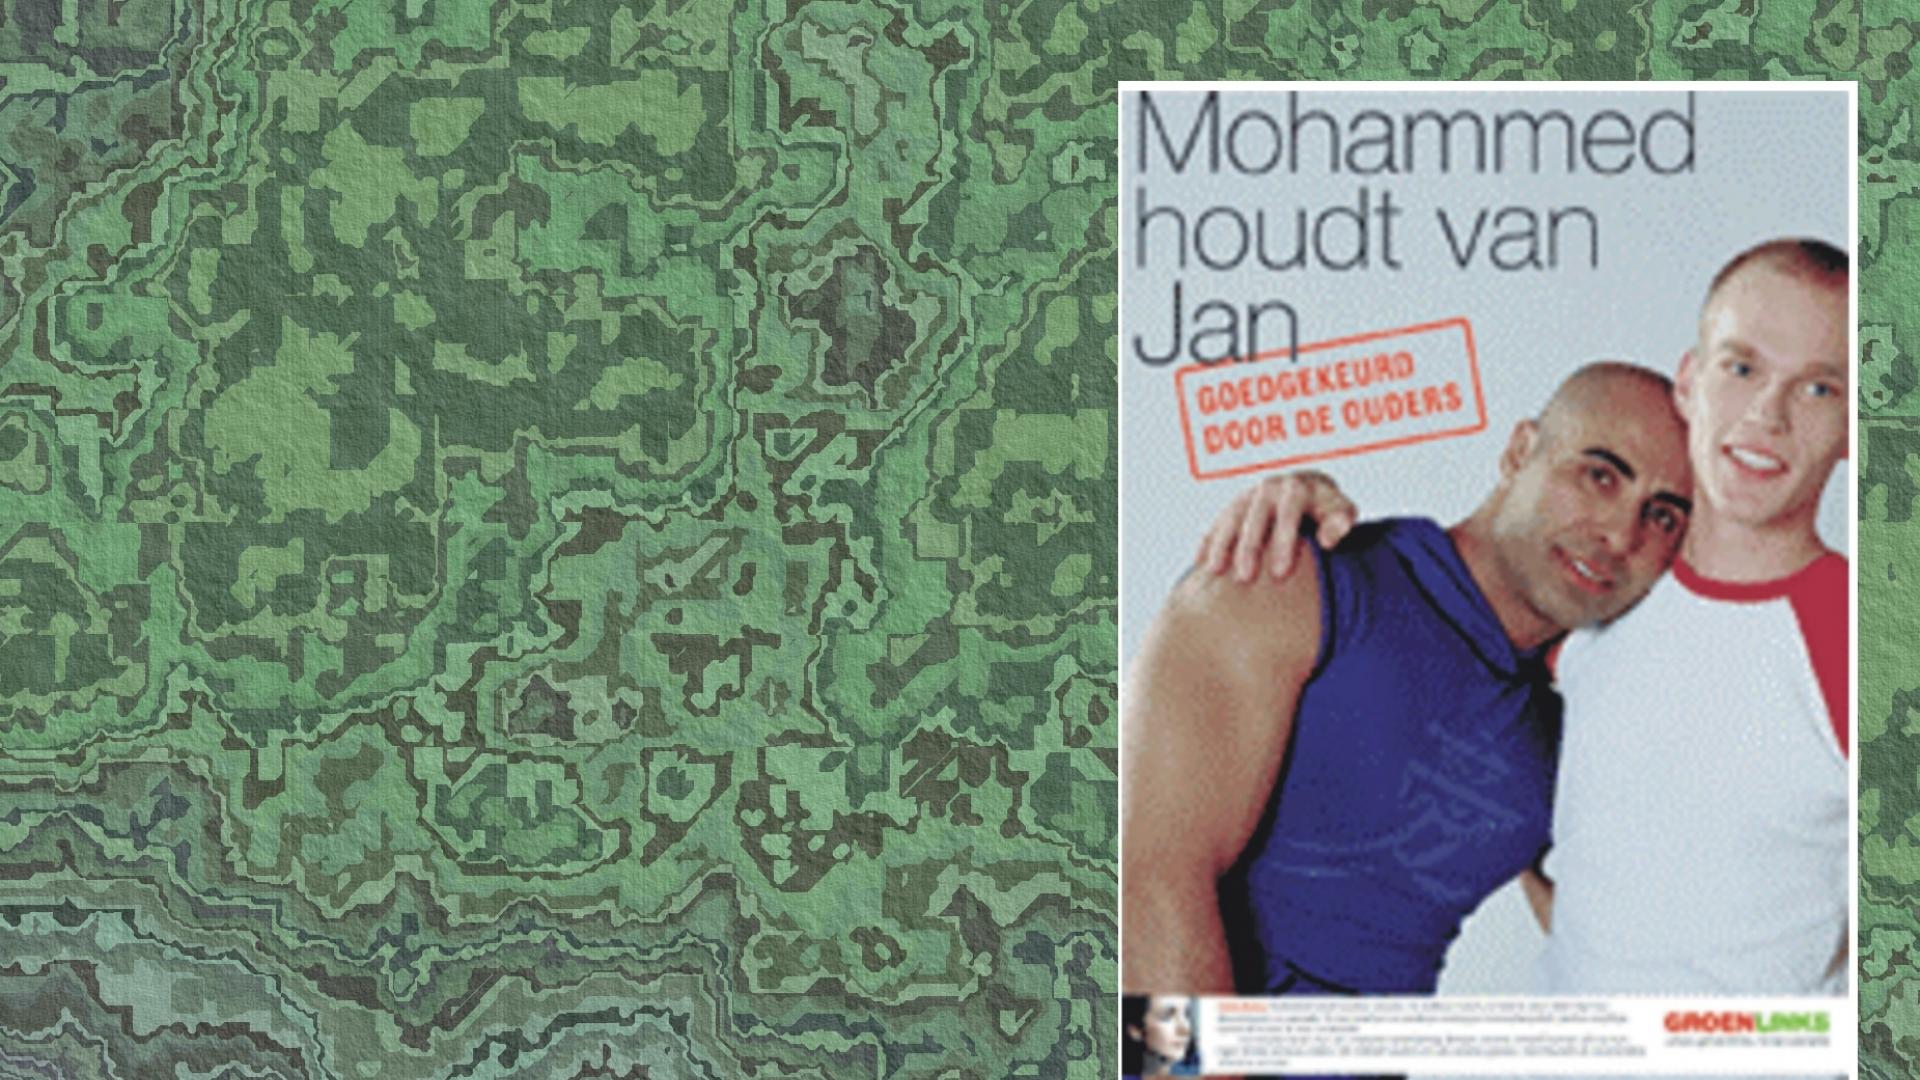 Affiche "Mohammed houdt van Jan" van GroenLinks met achtergrond